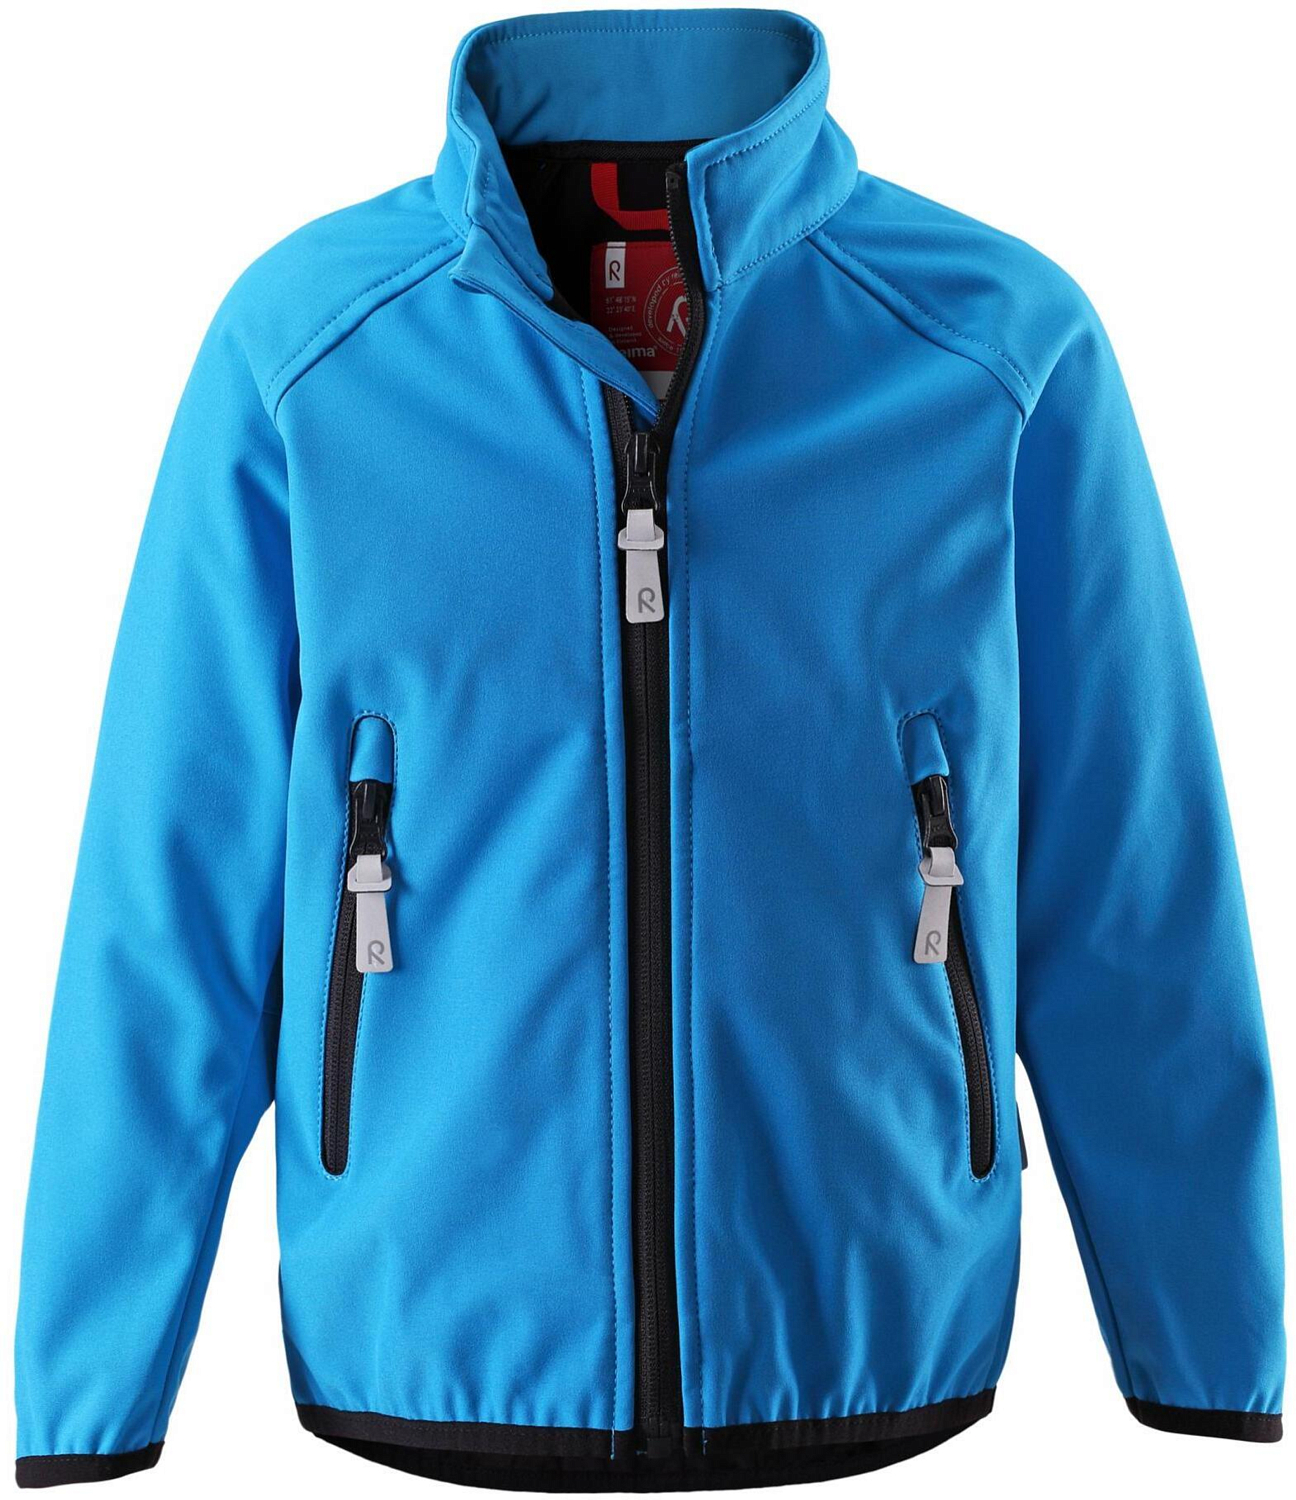 Куртка для активного отдыха Reima 2016 Recharge ocean blue